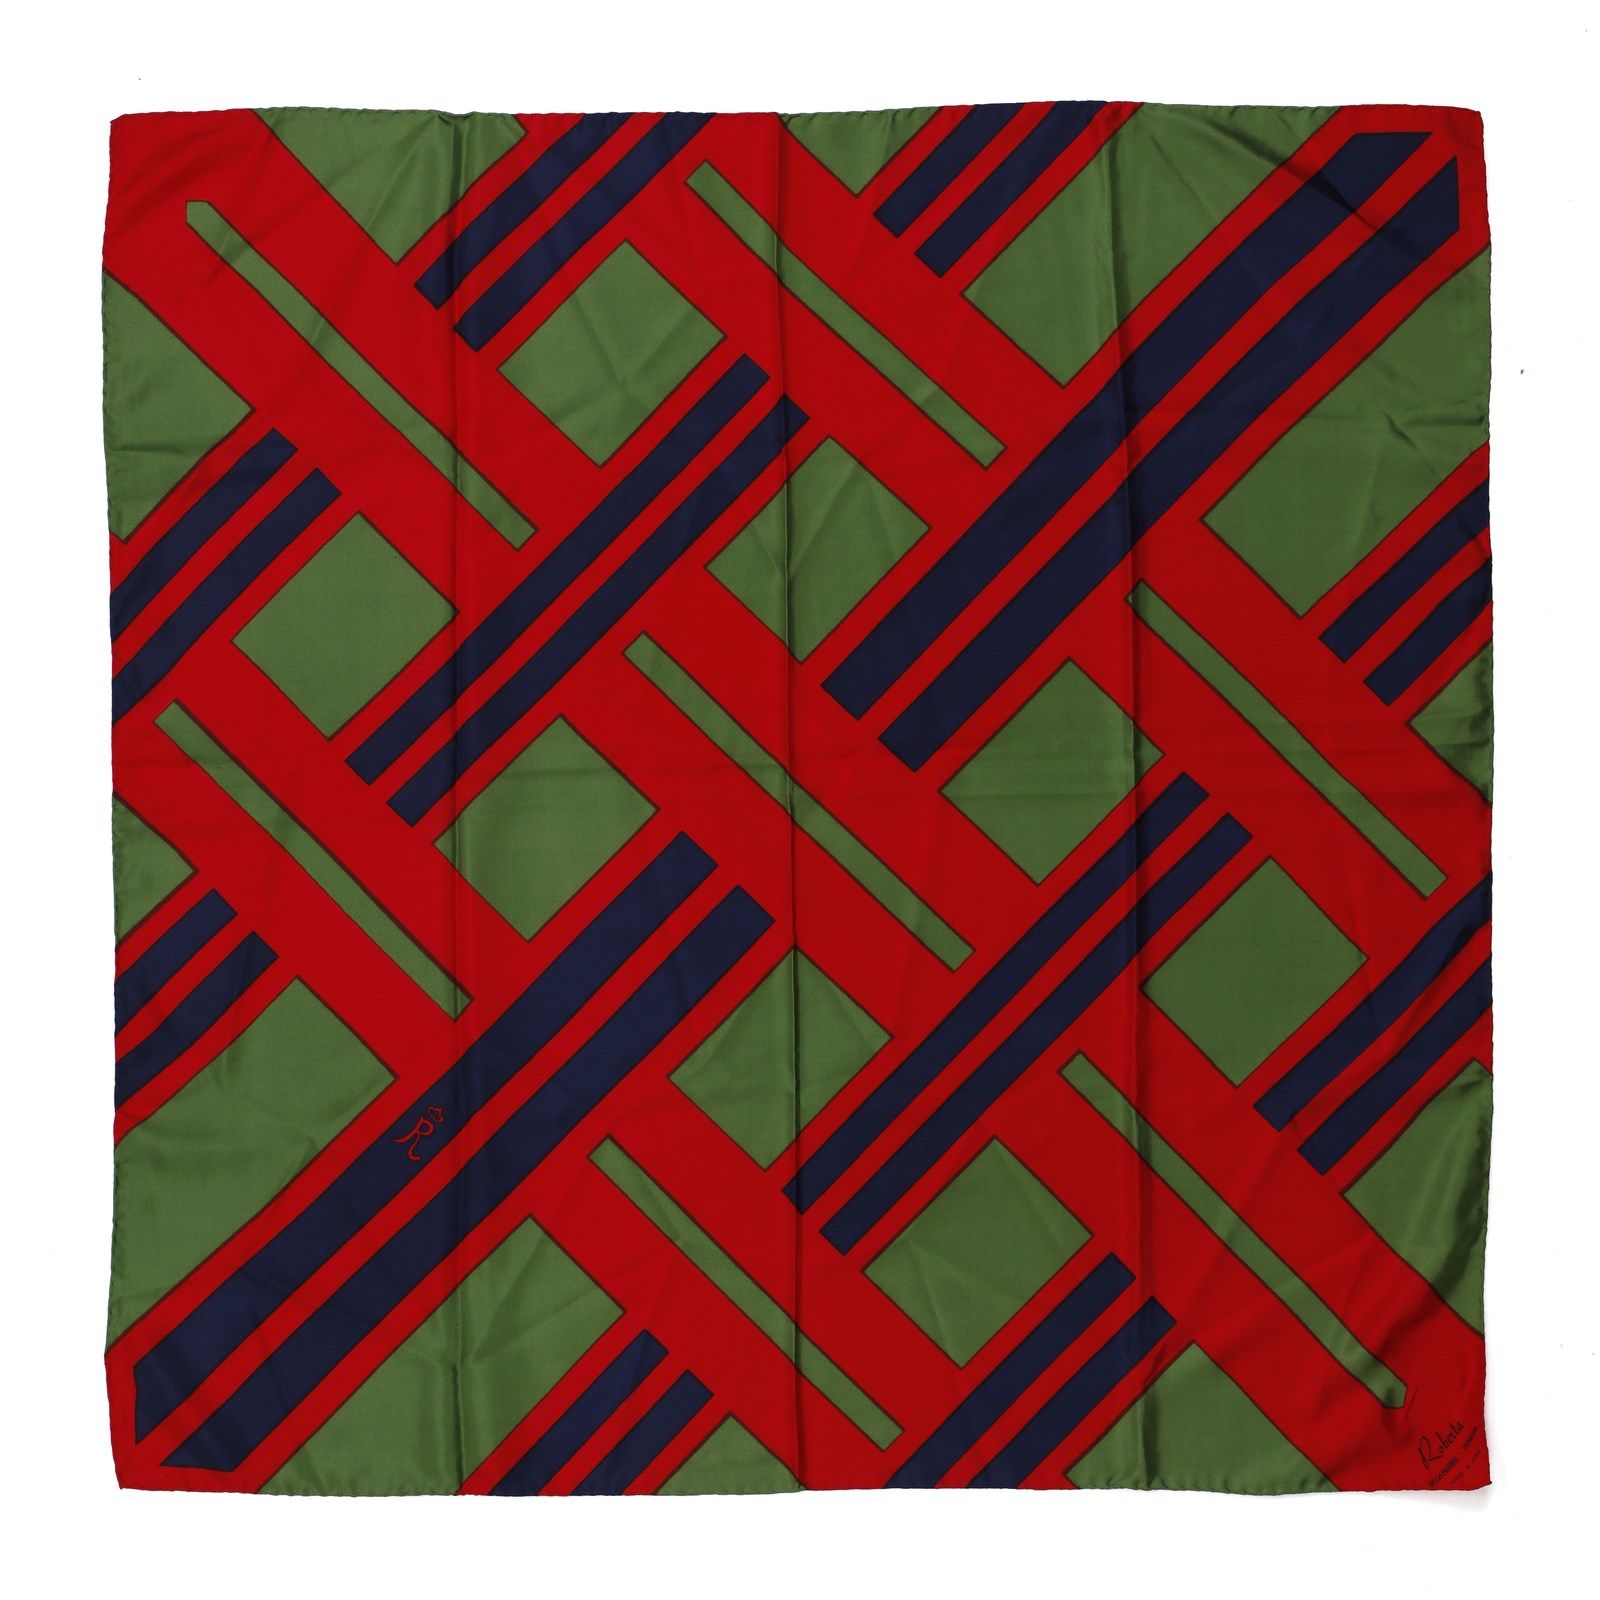 ROBERTA DI CAMERINO Multicolored silk scarf (green, red and blue). Multicolored &hellip;